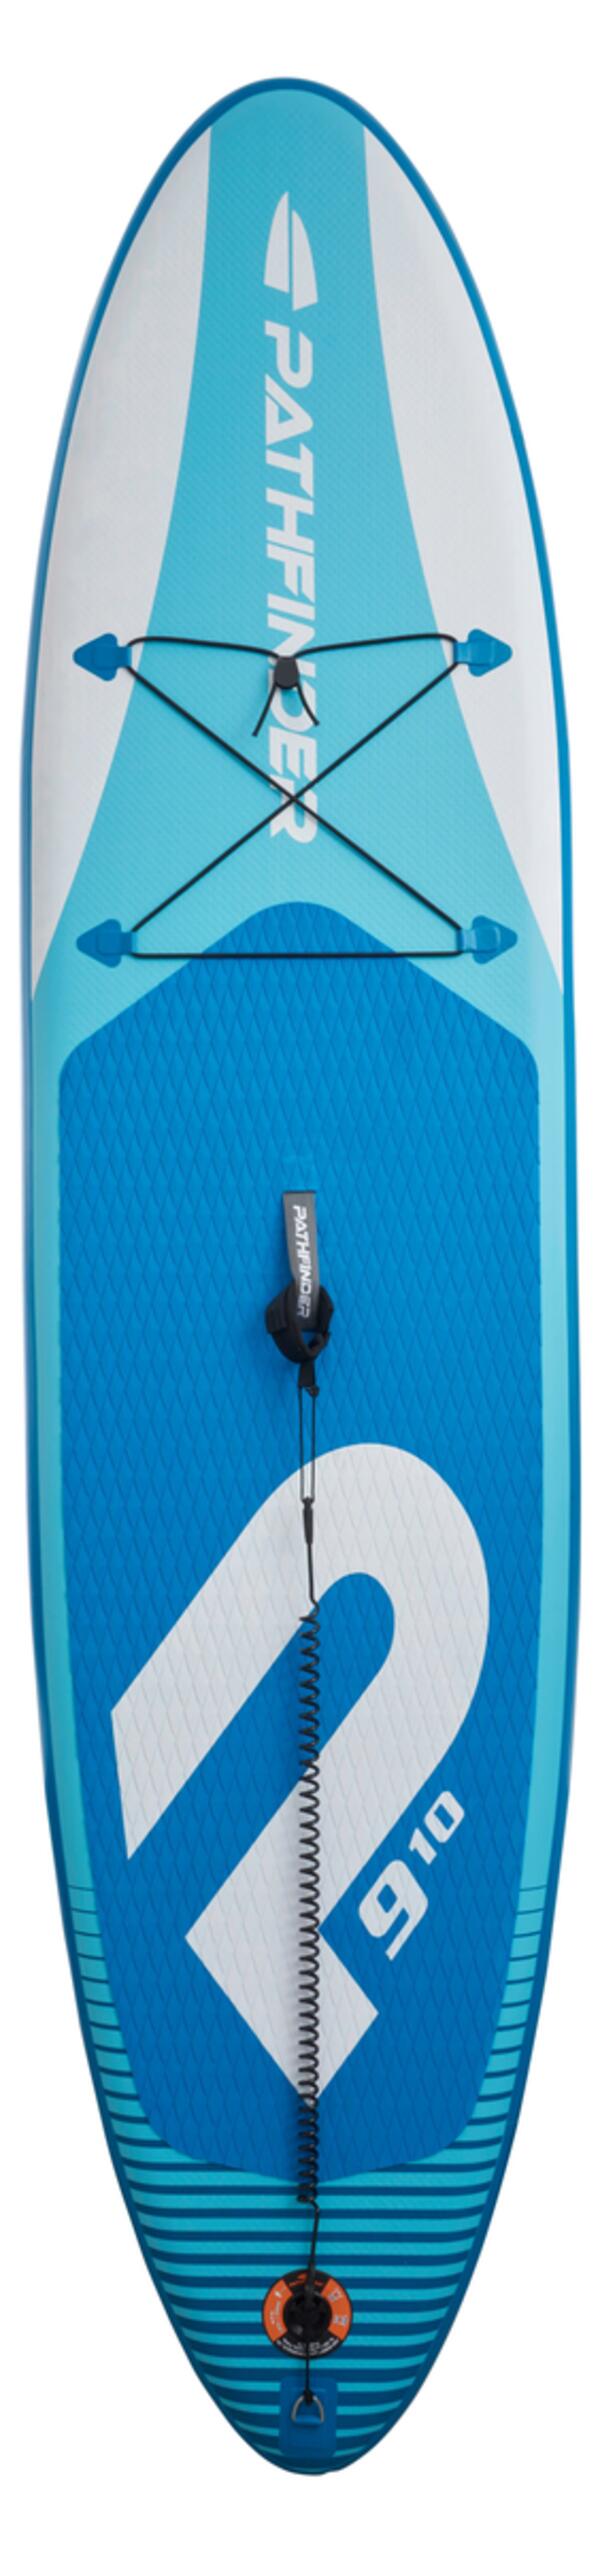 Bild 1 von Stand-Up Paddle Board Schou in Blau/Weiß